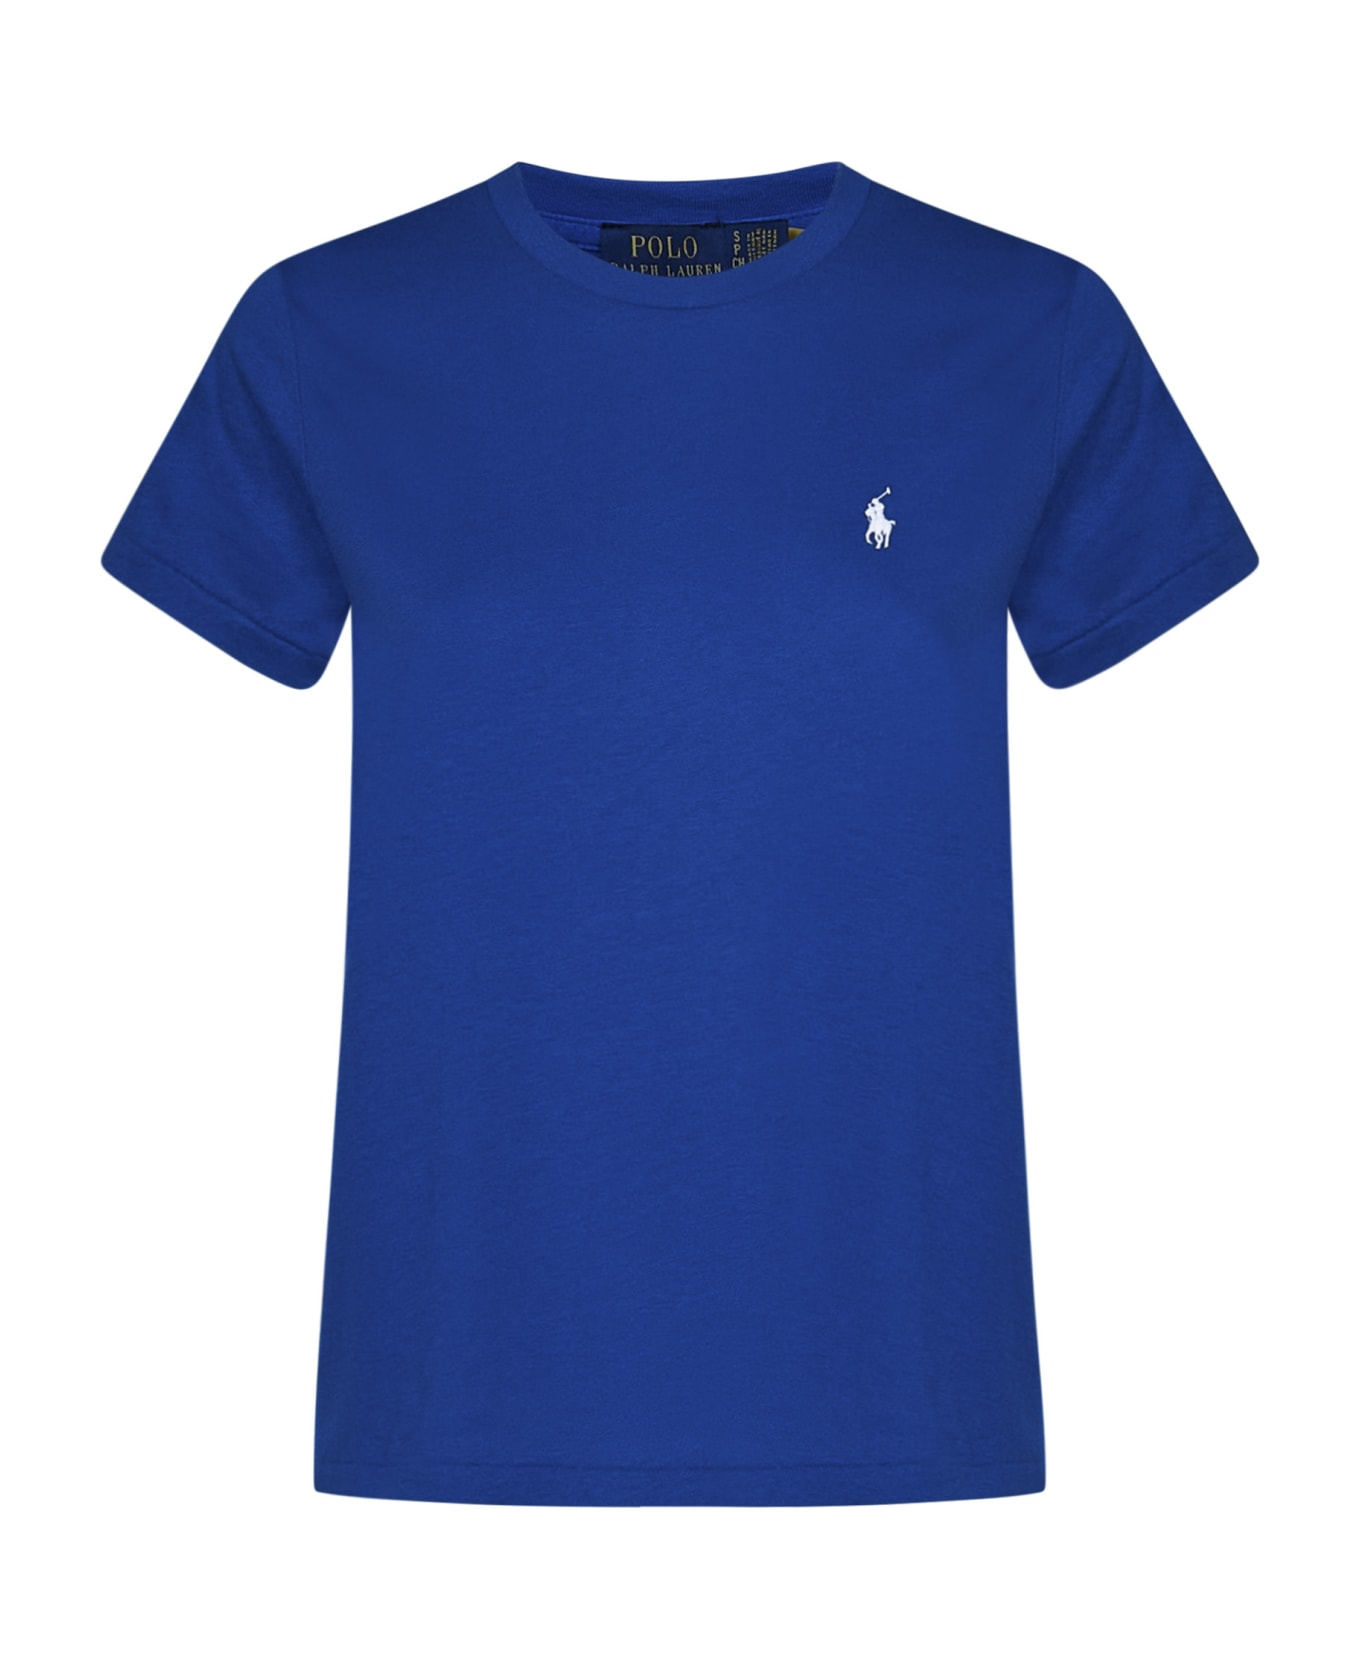 Ralph Lauren T-shirt - BLUE